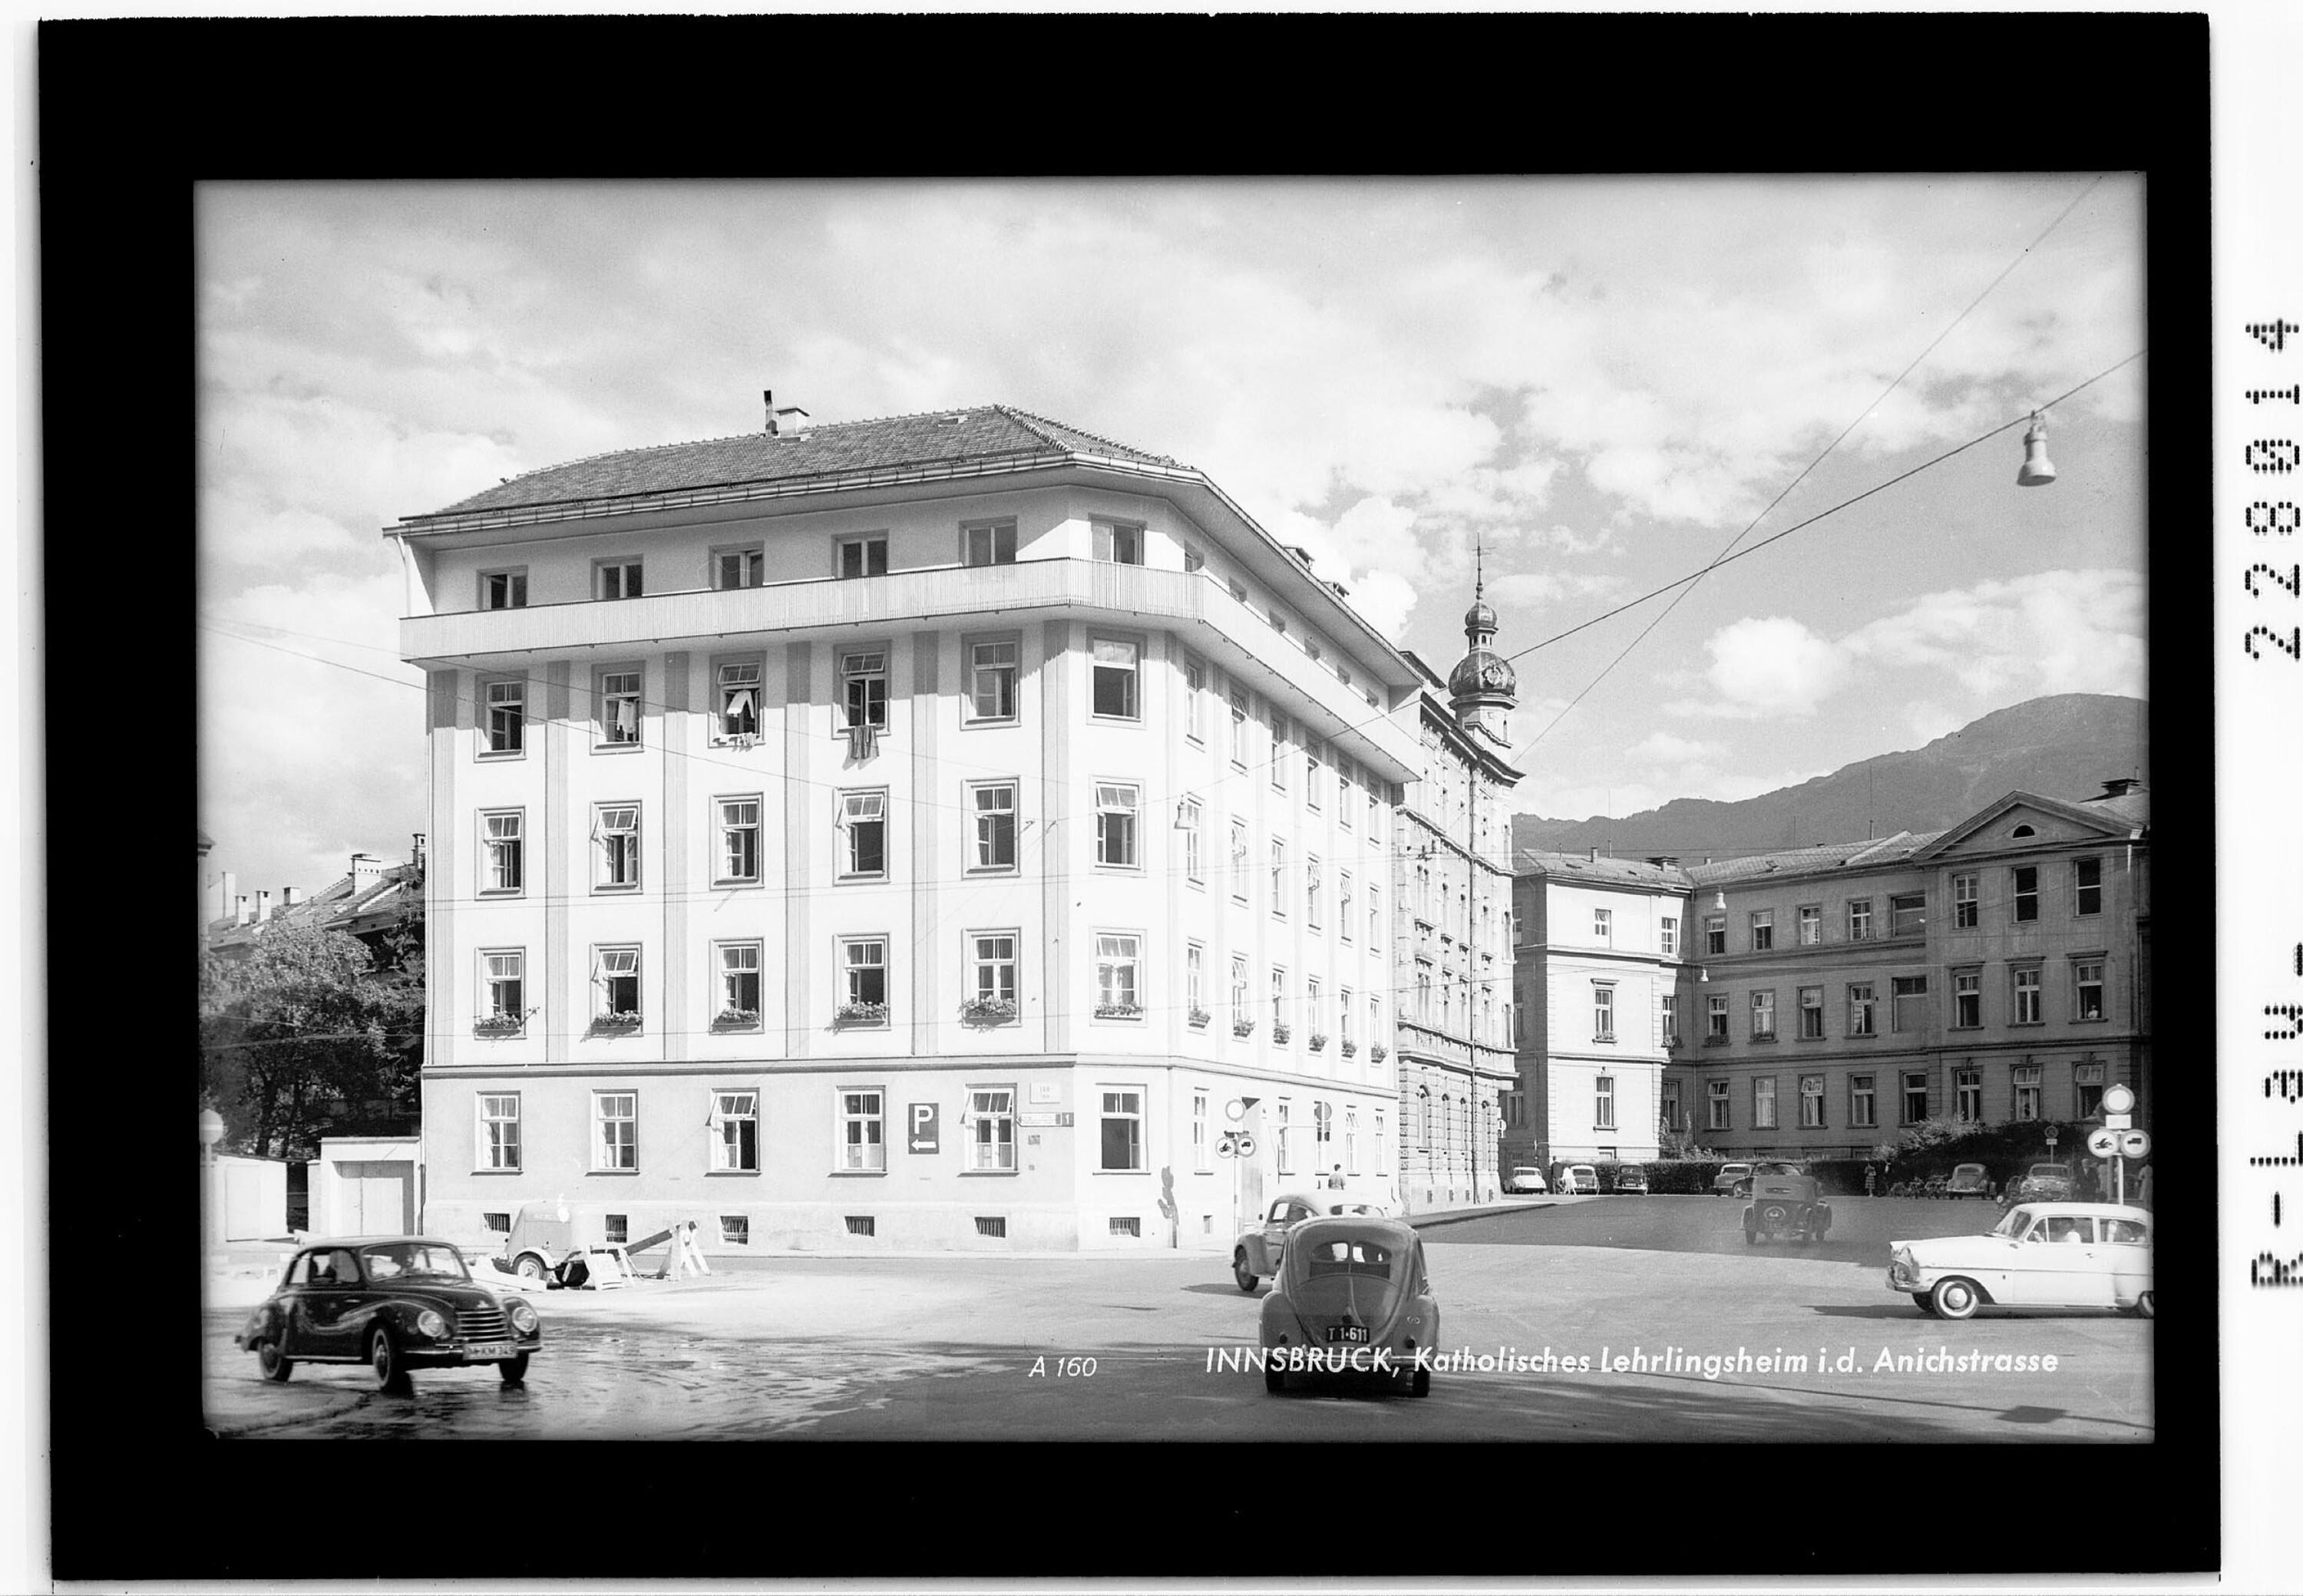 Innsbruck / Katholisches Lehrlingsheim in der Anichstrasse></div>


    <hr>
    <div class=